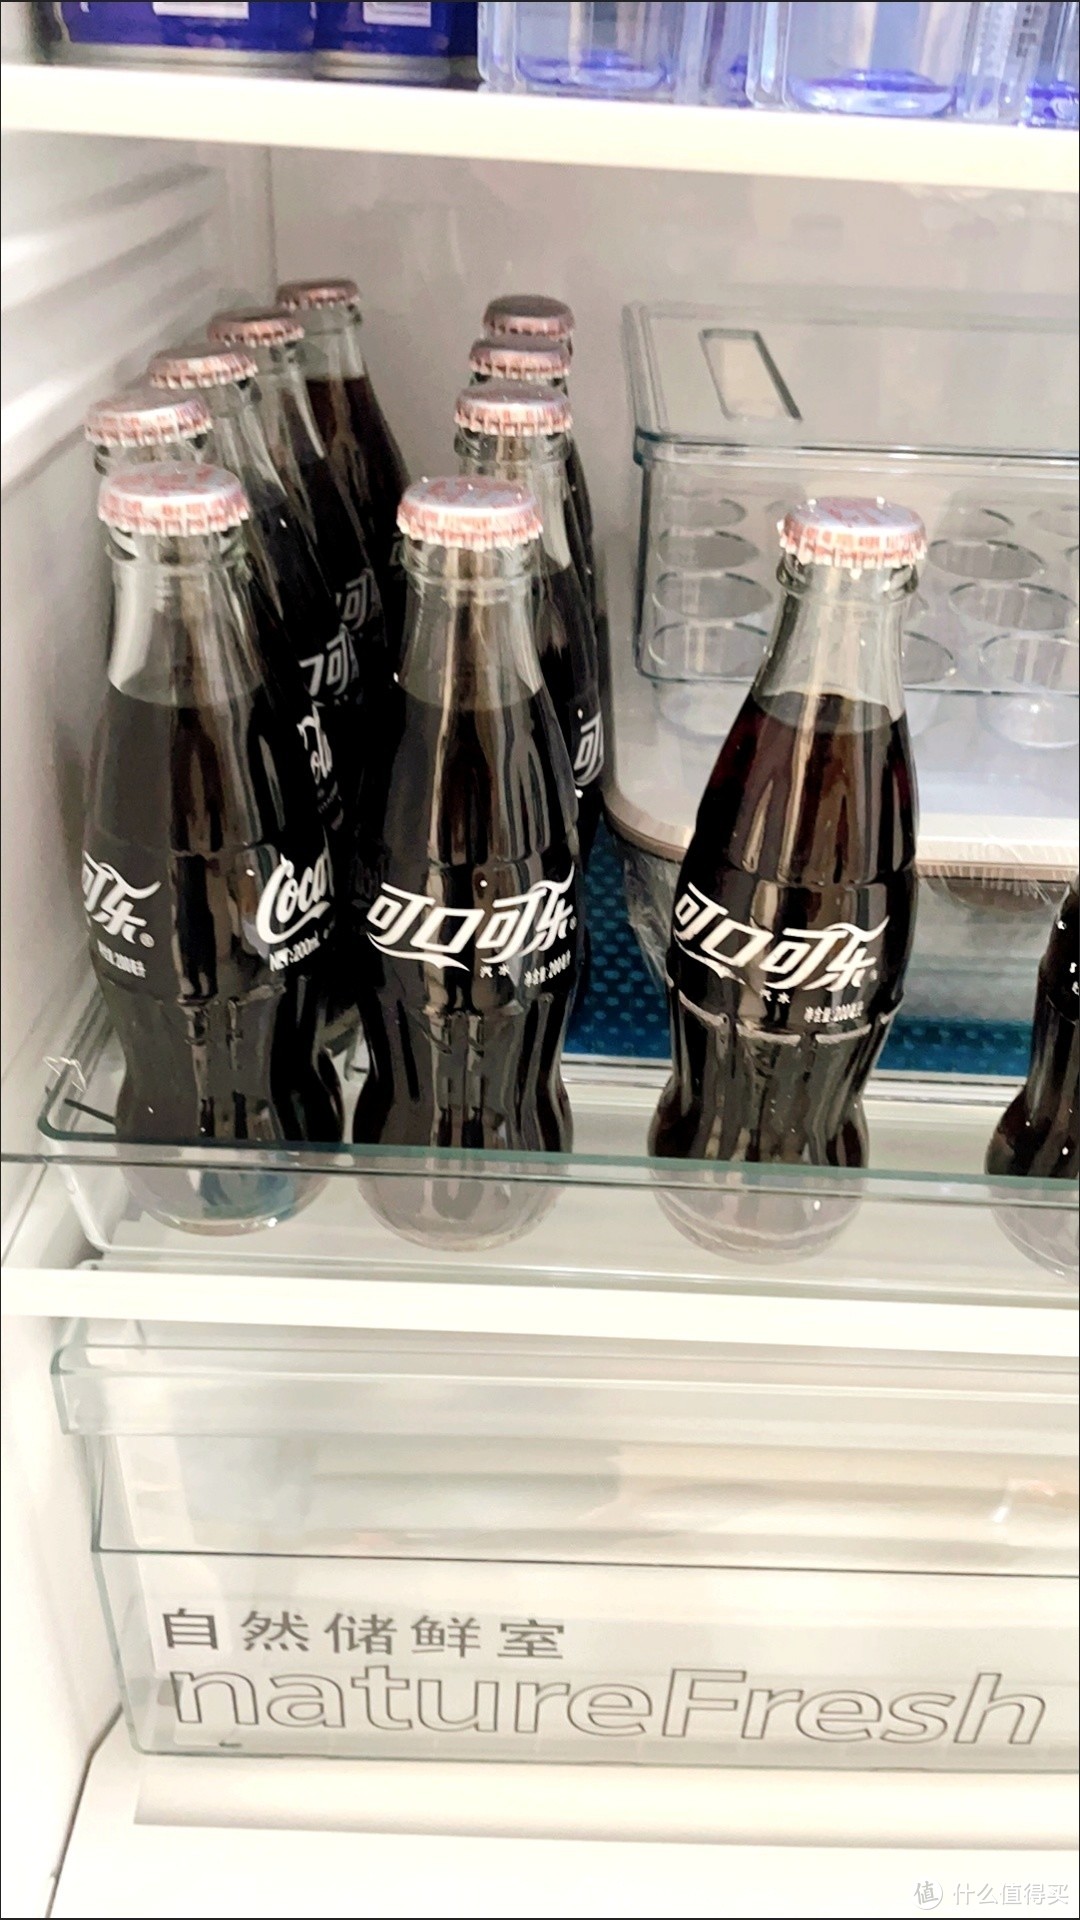 所有的塑料饮料瓶子都叫做“可乐瓶”